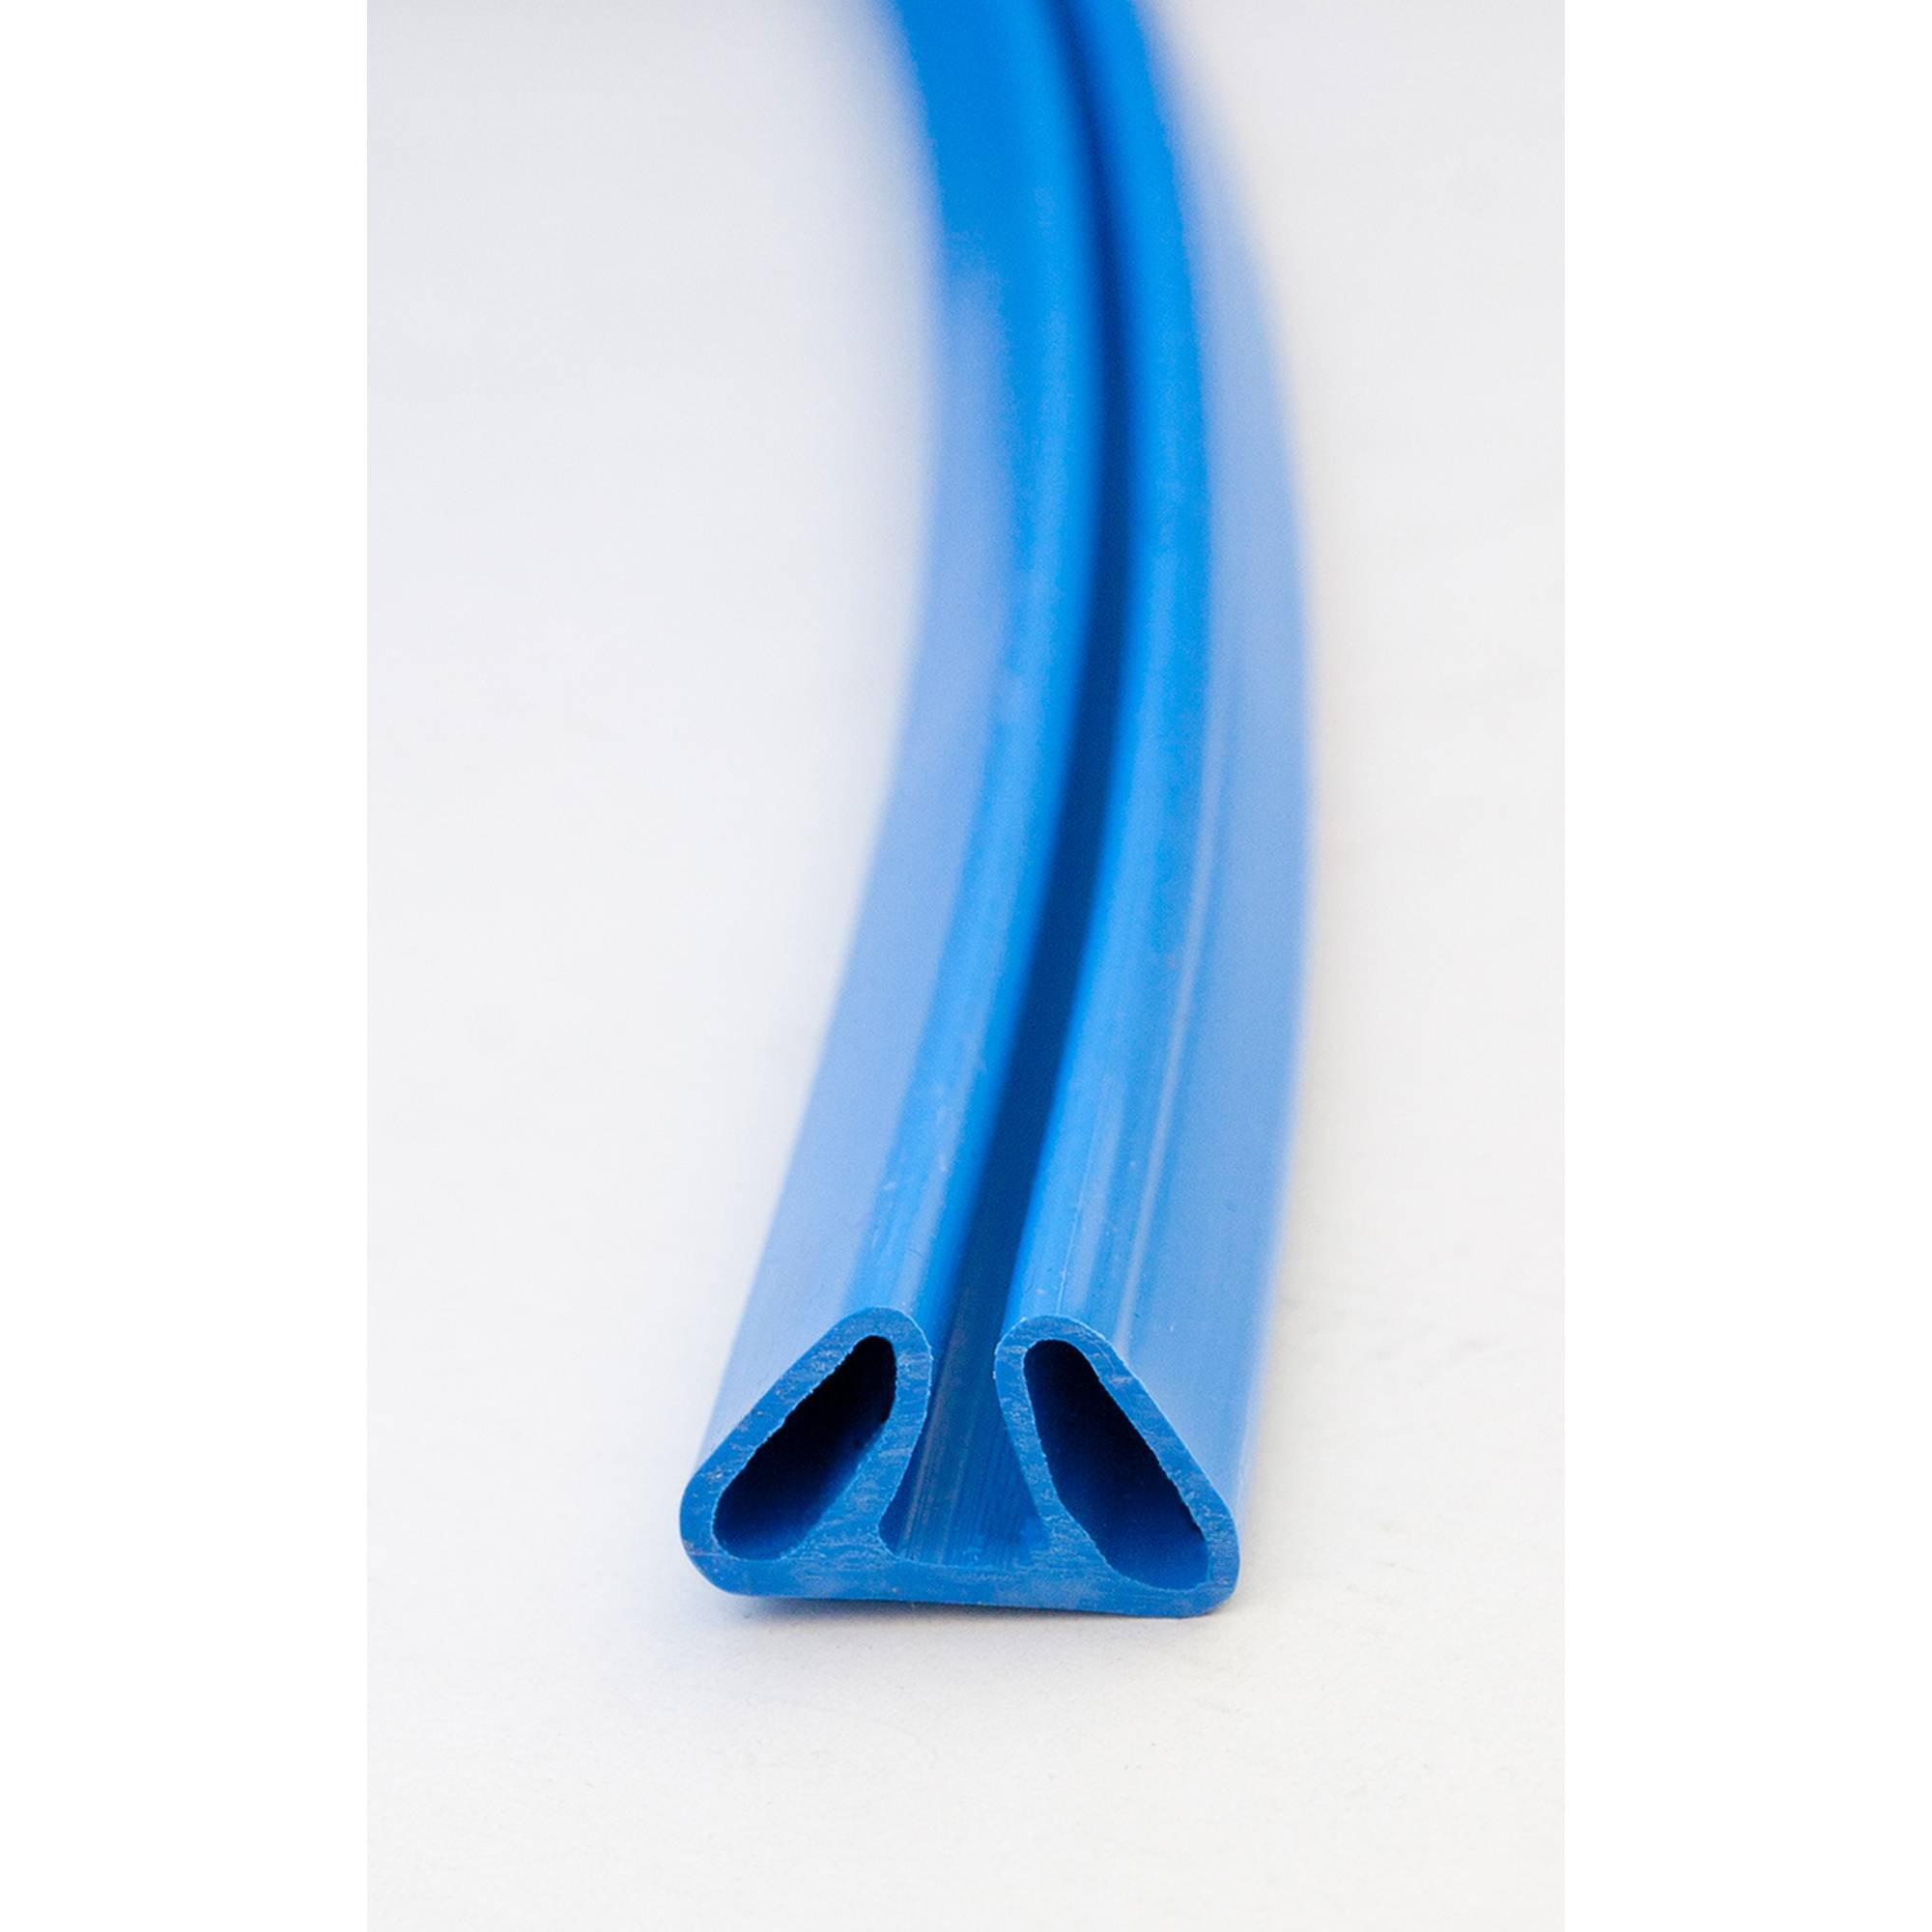 Stahlwandpool rund Exklusiv 450x120 cm, Stahl 0,6 mm weiß, Folie 0,6 mm blau, Einhängebiese